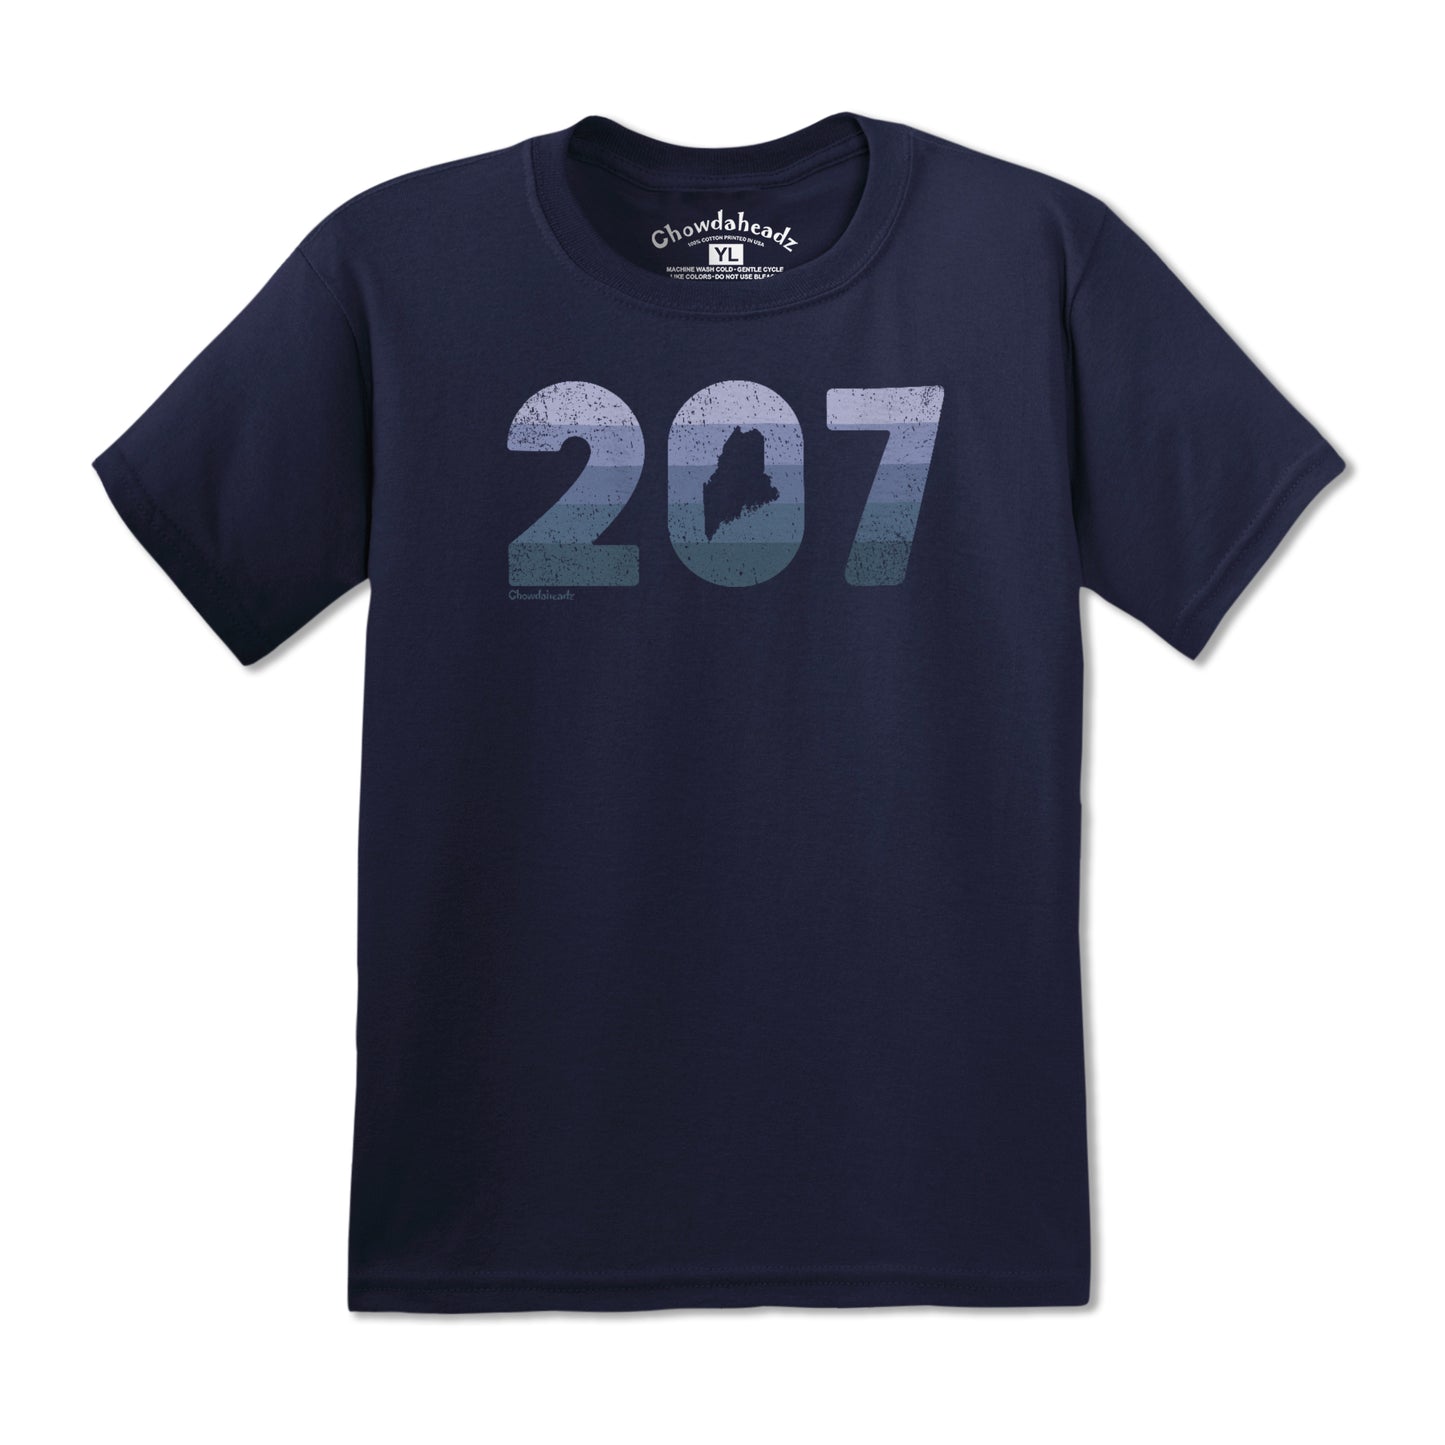 Maine Retro 207 Youth T-Shirt - Chowdaheadz